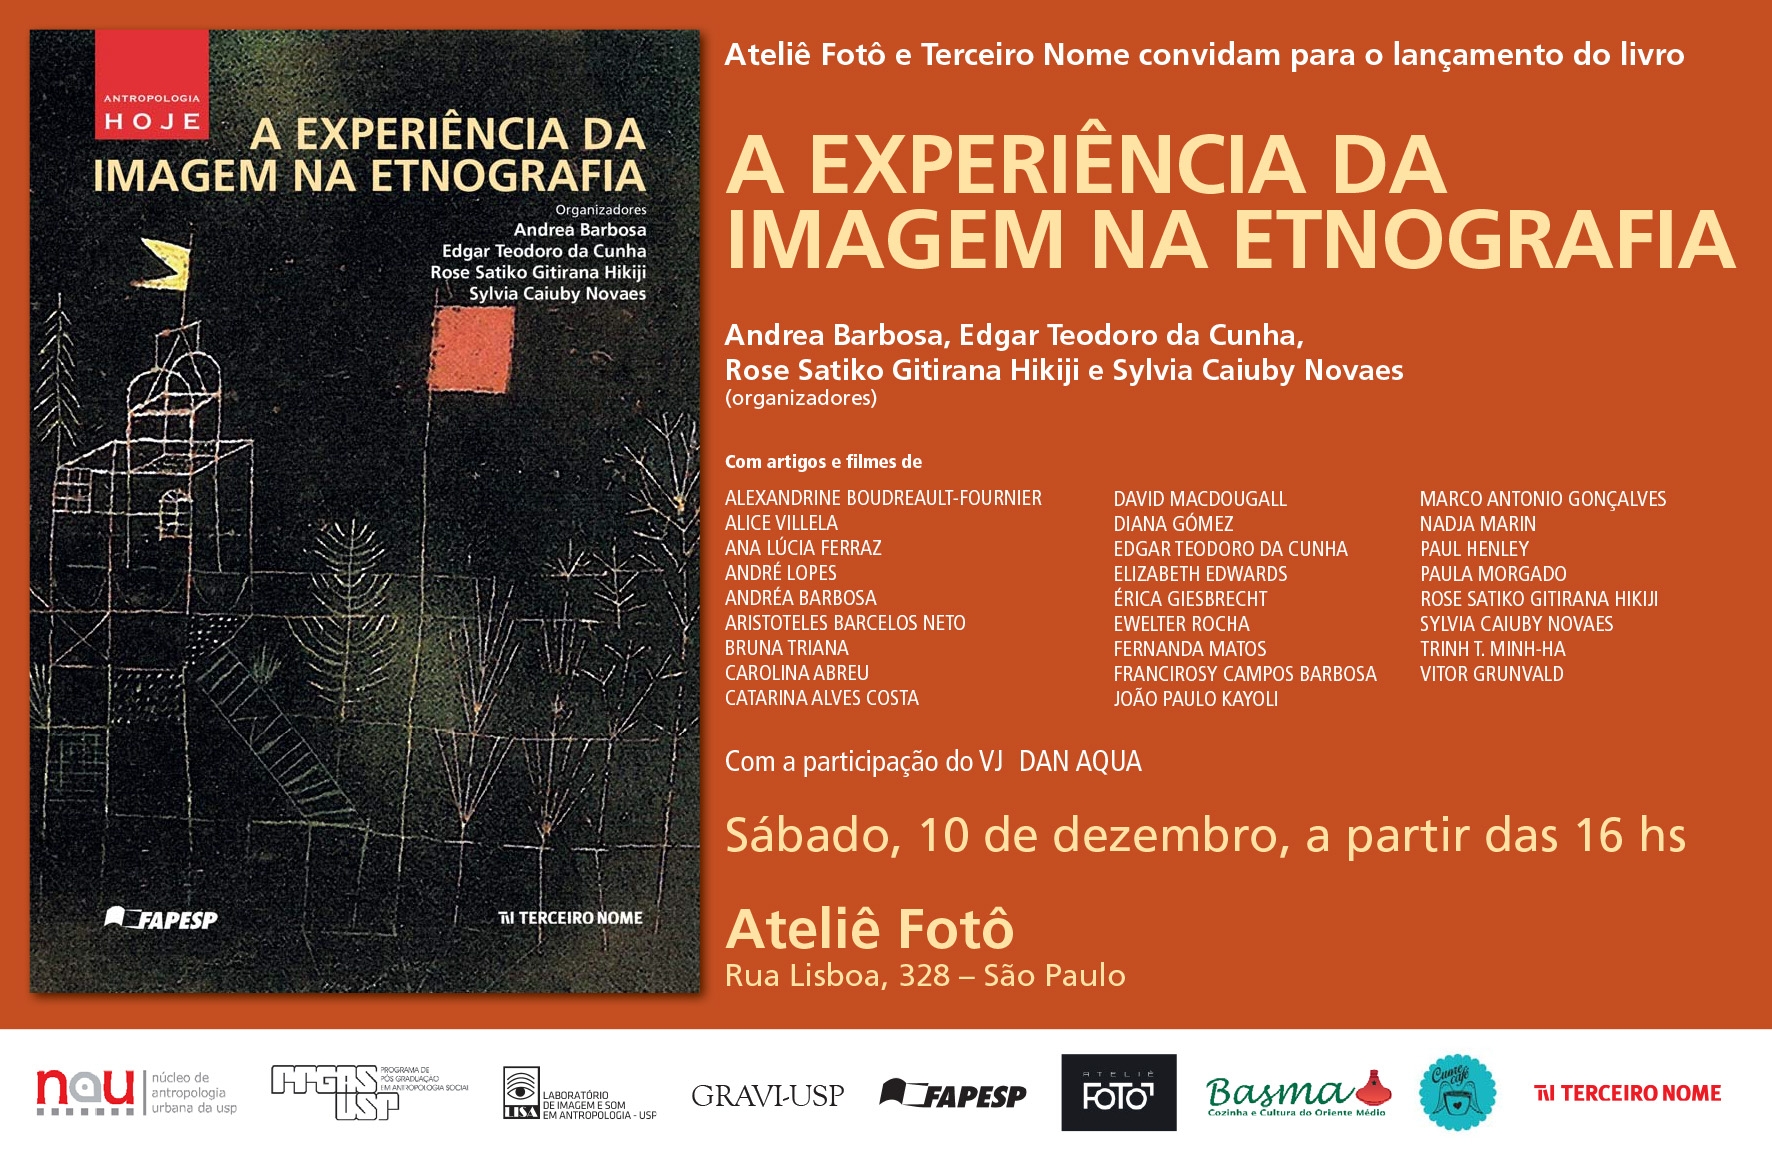 Ateliê Fotô e Terceiro Nome convidam para o lançamento do livro "A Experiência da Imagem na Etnografia"